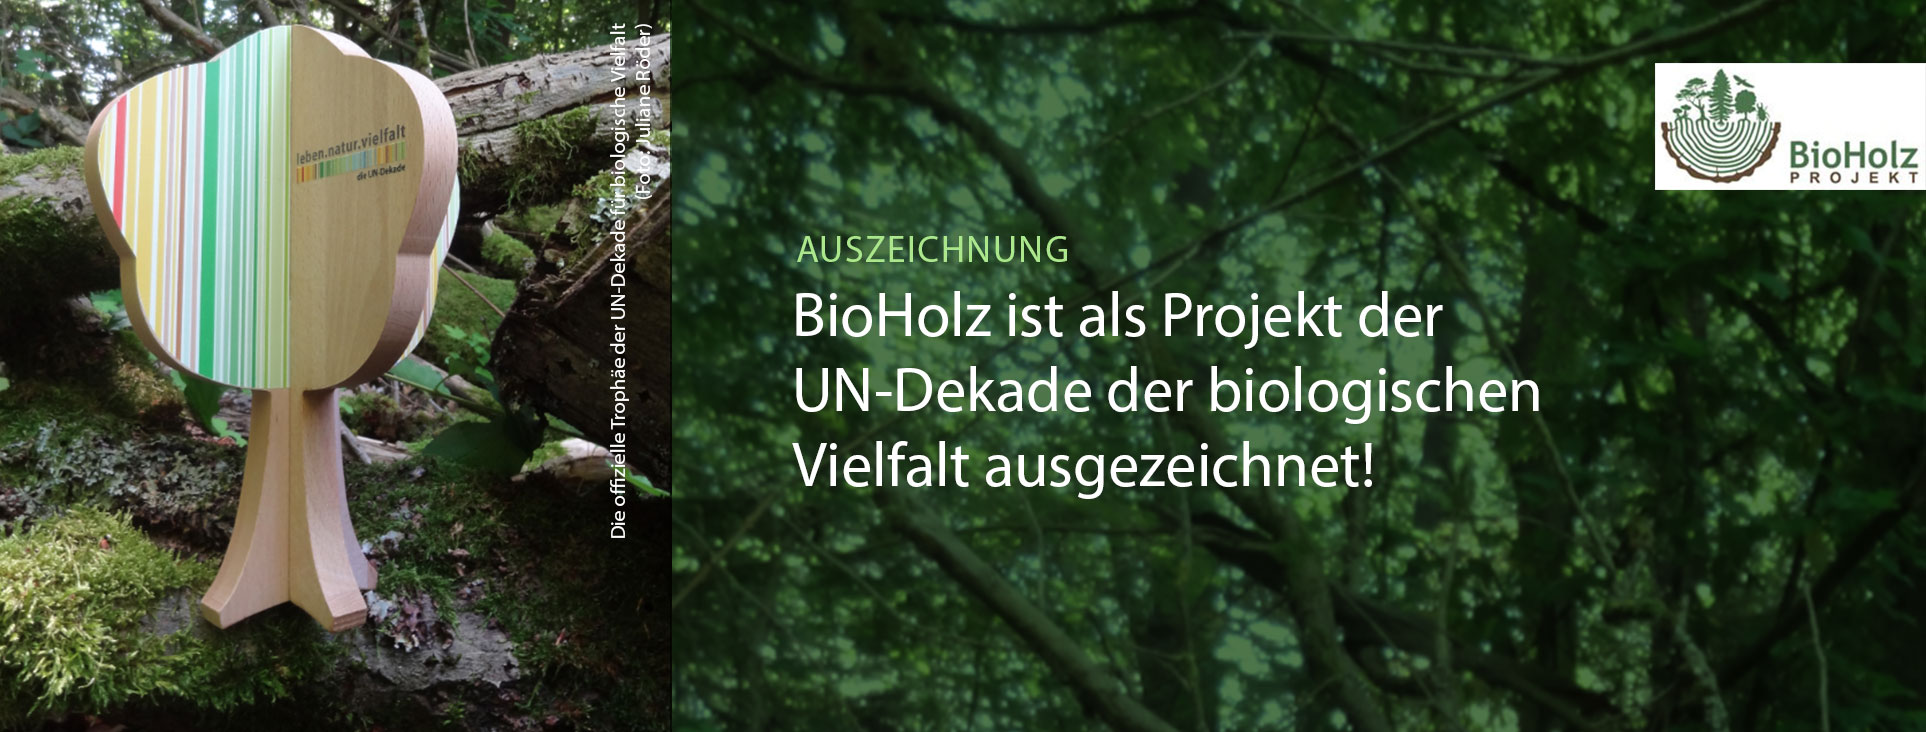 Das Foto zeigt die offizielle Trophäe der UN Dekade für biologische Vielfalt und symbolisiert ein Holzbäumchen. Im Hintergrund ist Totholz zu sehen.